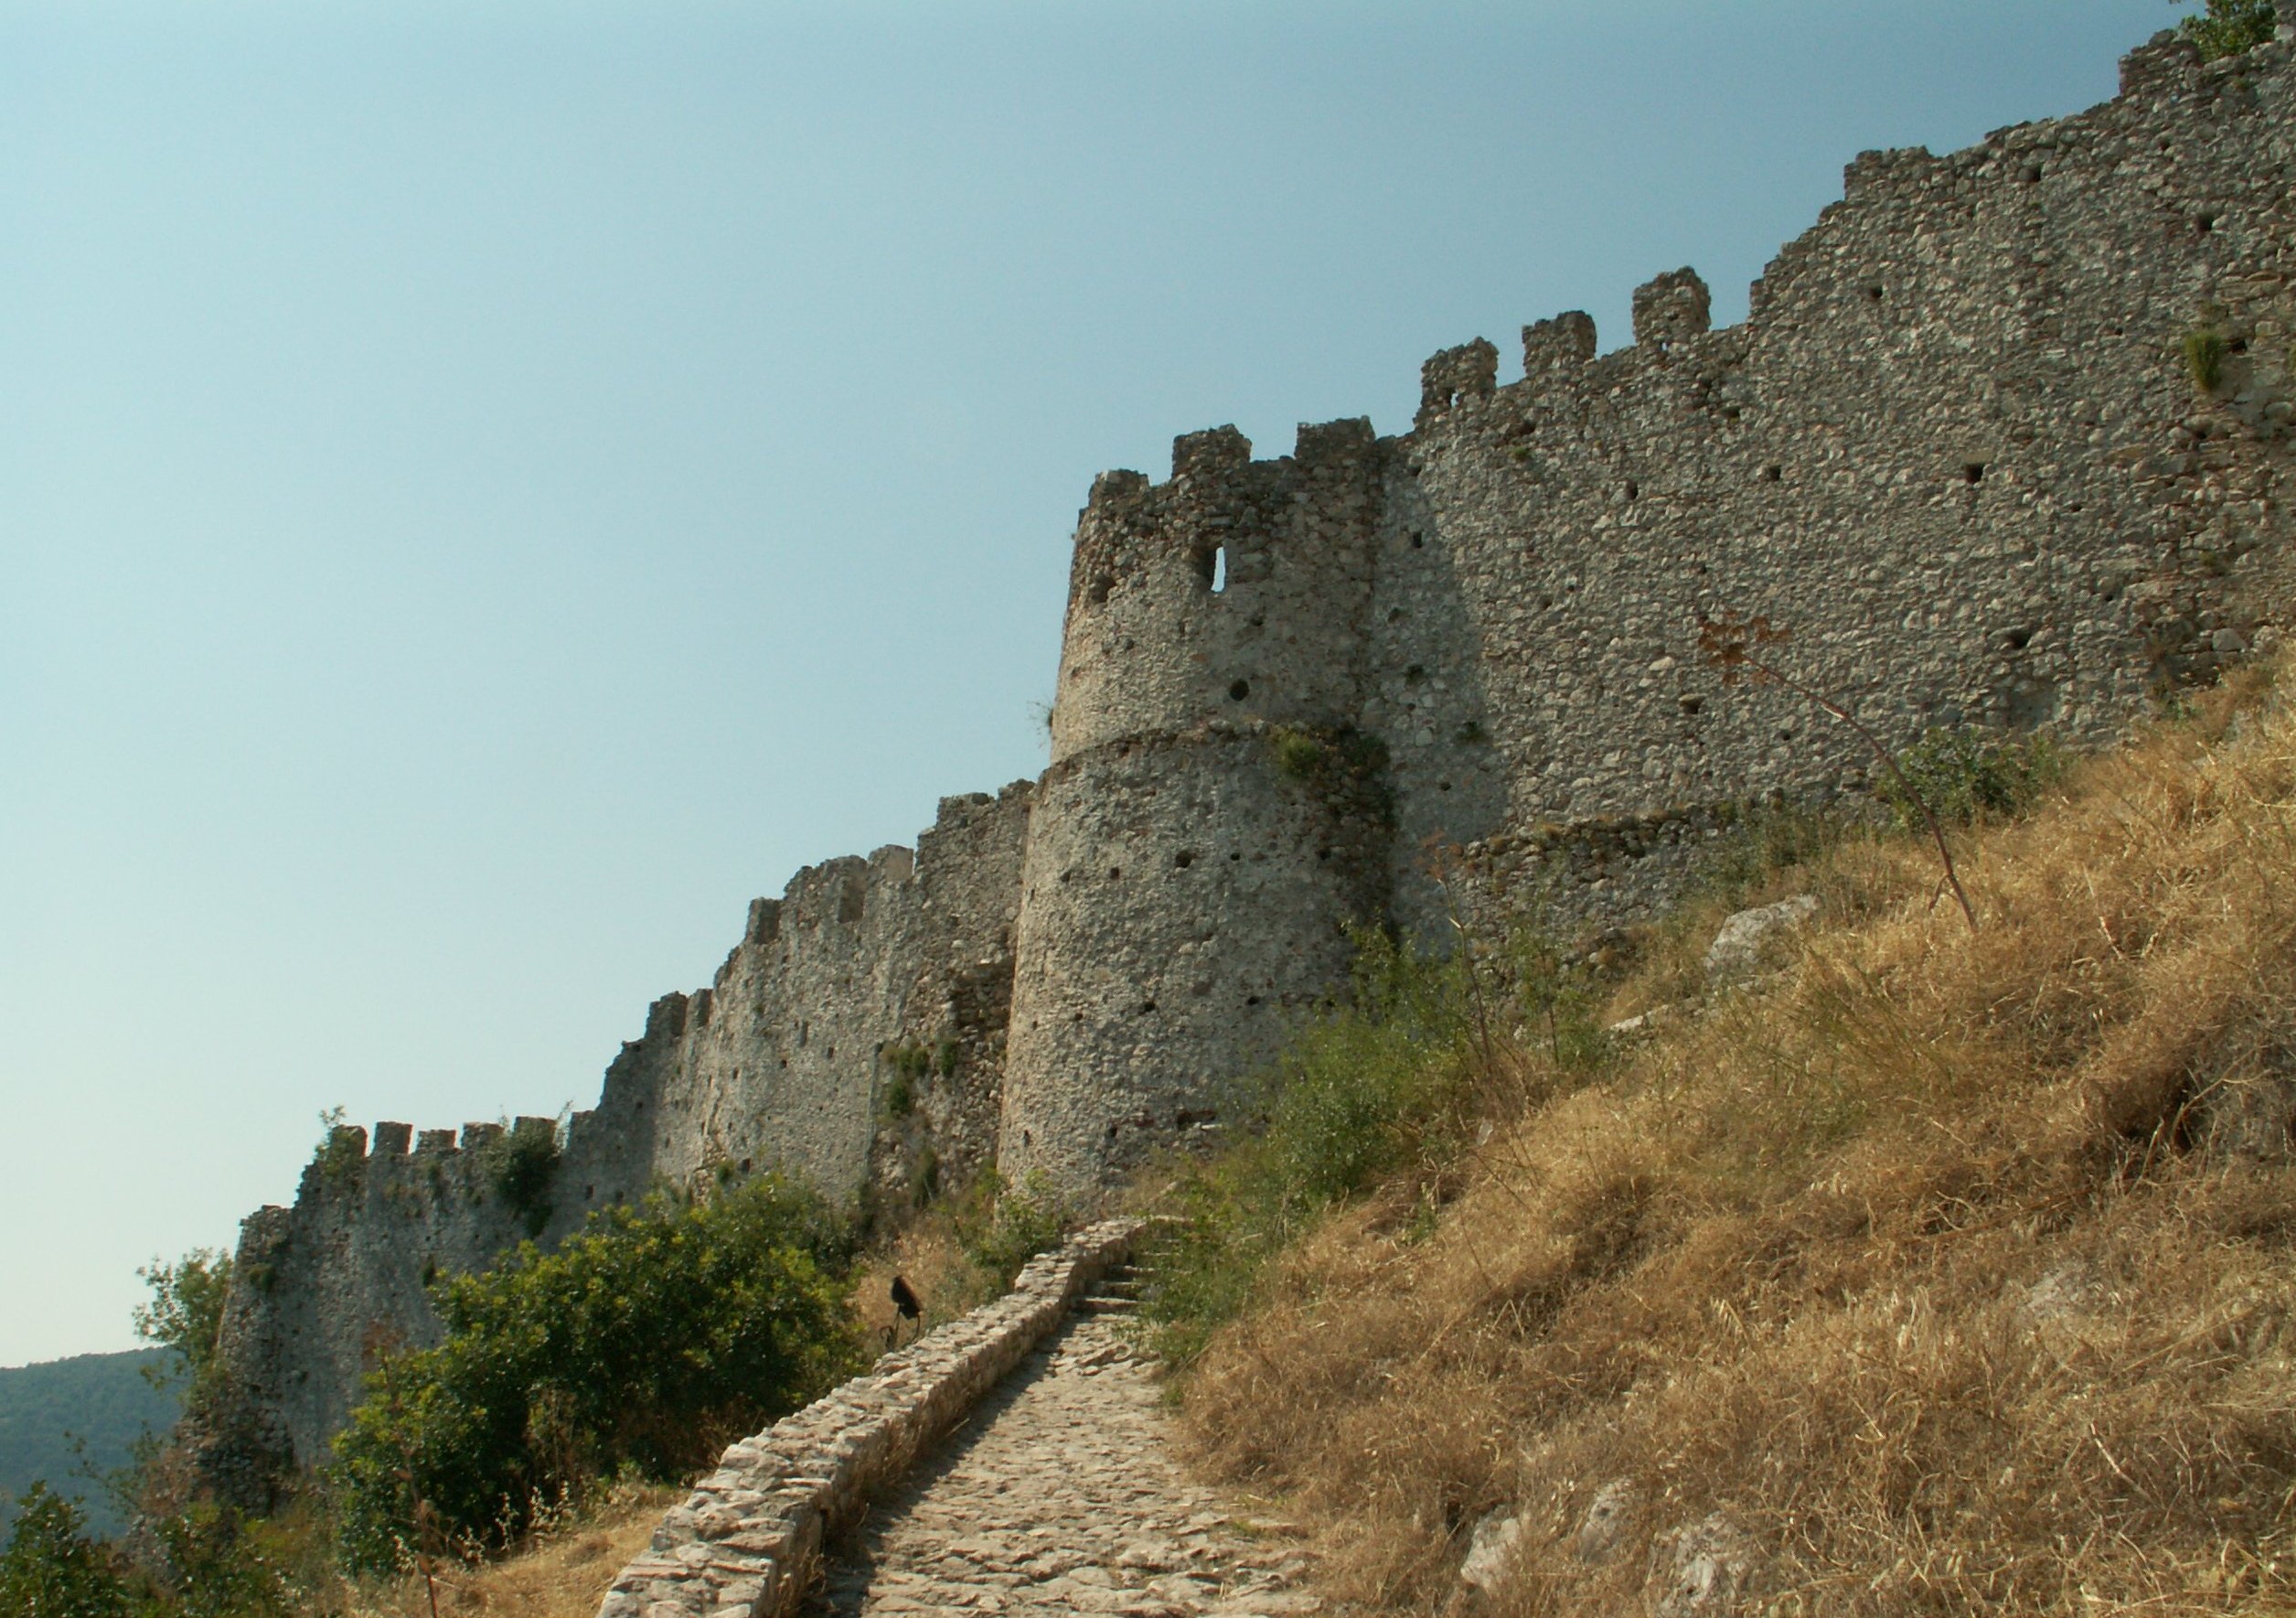 Византийская крепость Мистра на Пелопоннесе. Вид в наши дни